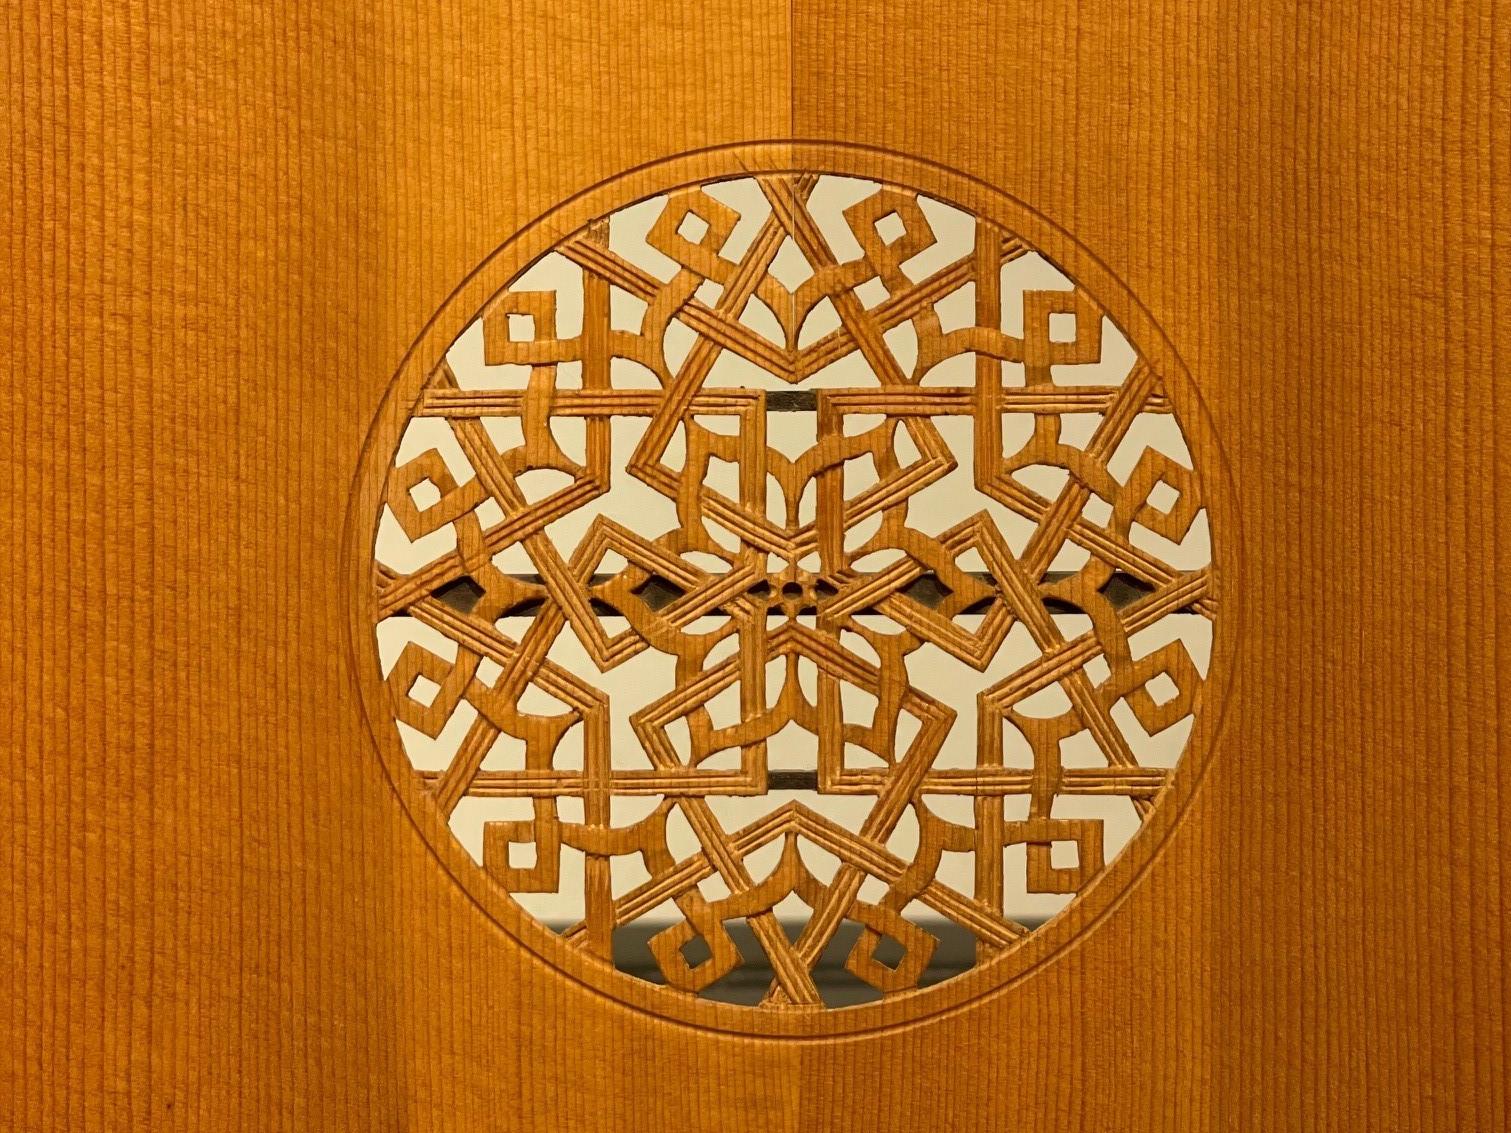 En la imagen se aprecia una lámina de madera tallada, que corresponde a la cara frontal de un laud, en su centro se observa un círculo calado con motivos florales y geométricos.